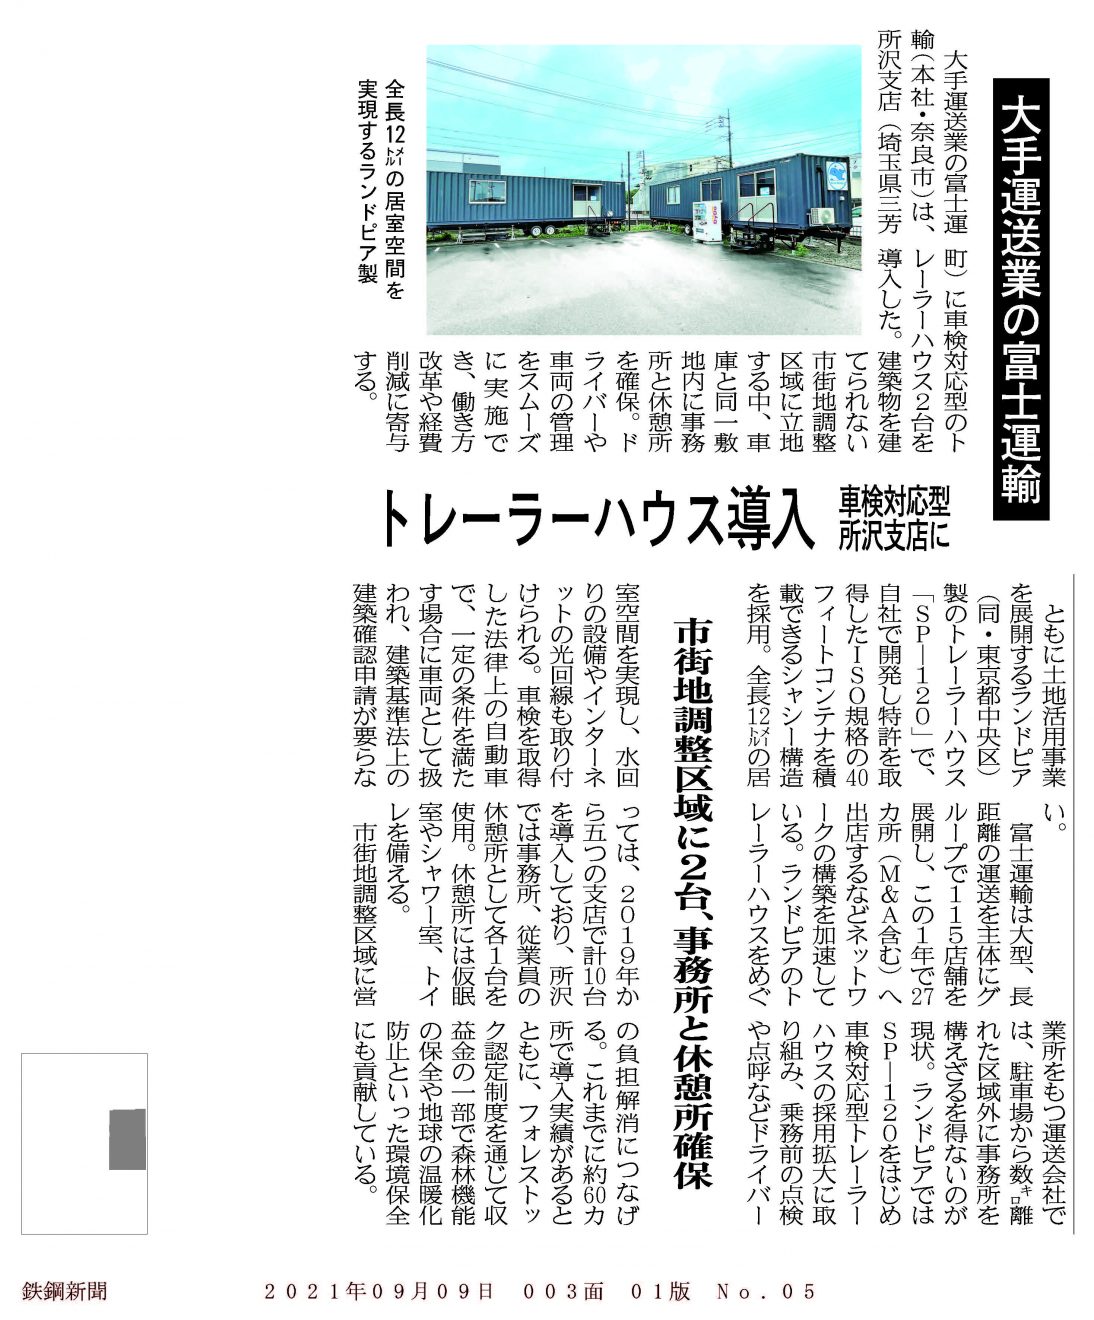 【鉄鋼新聞】富士運輸トレーラーハウス導入_210909